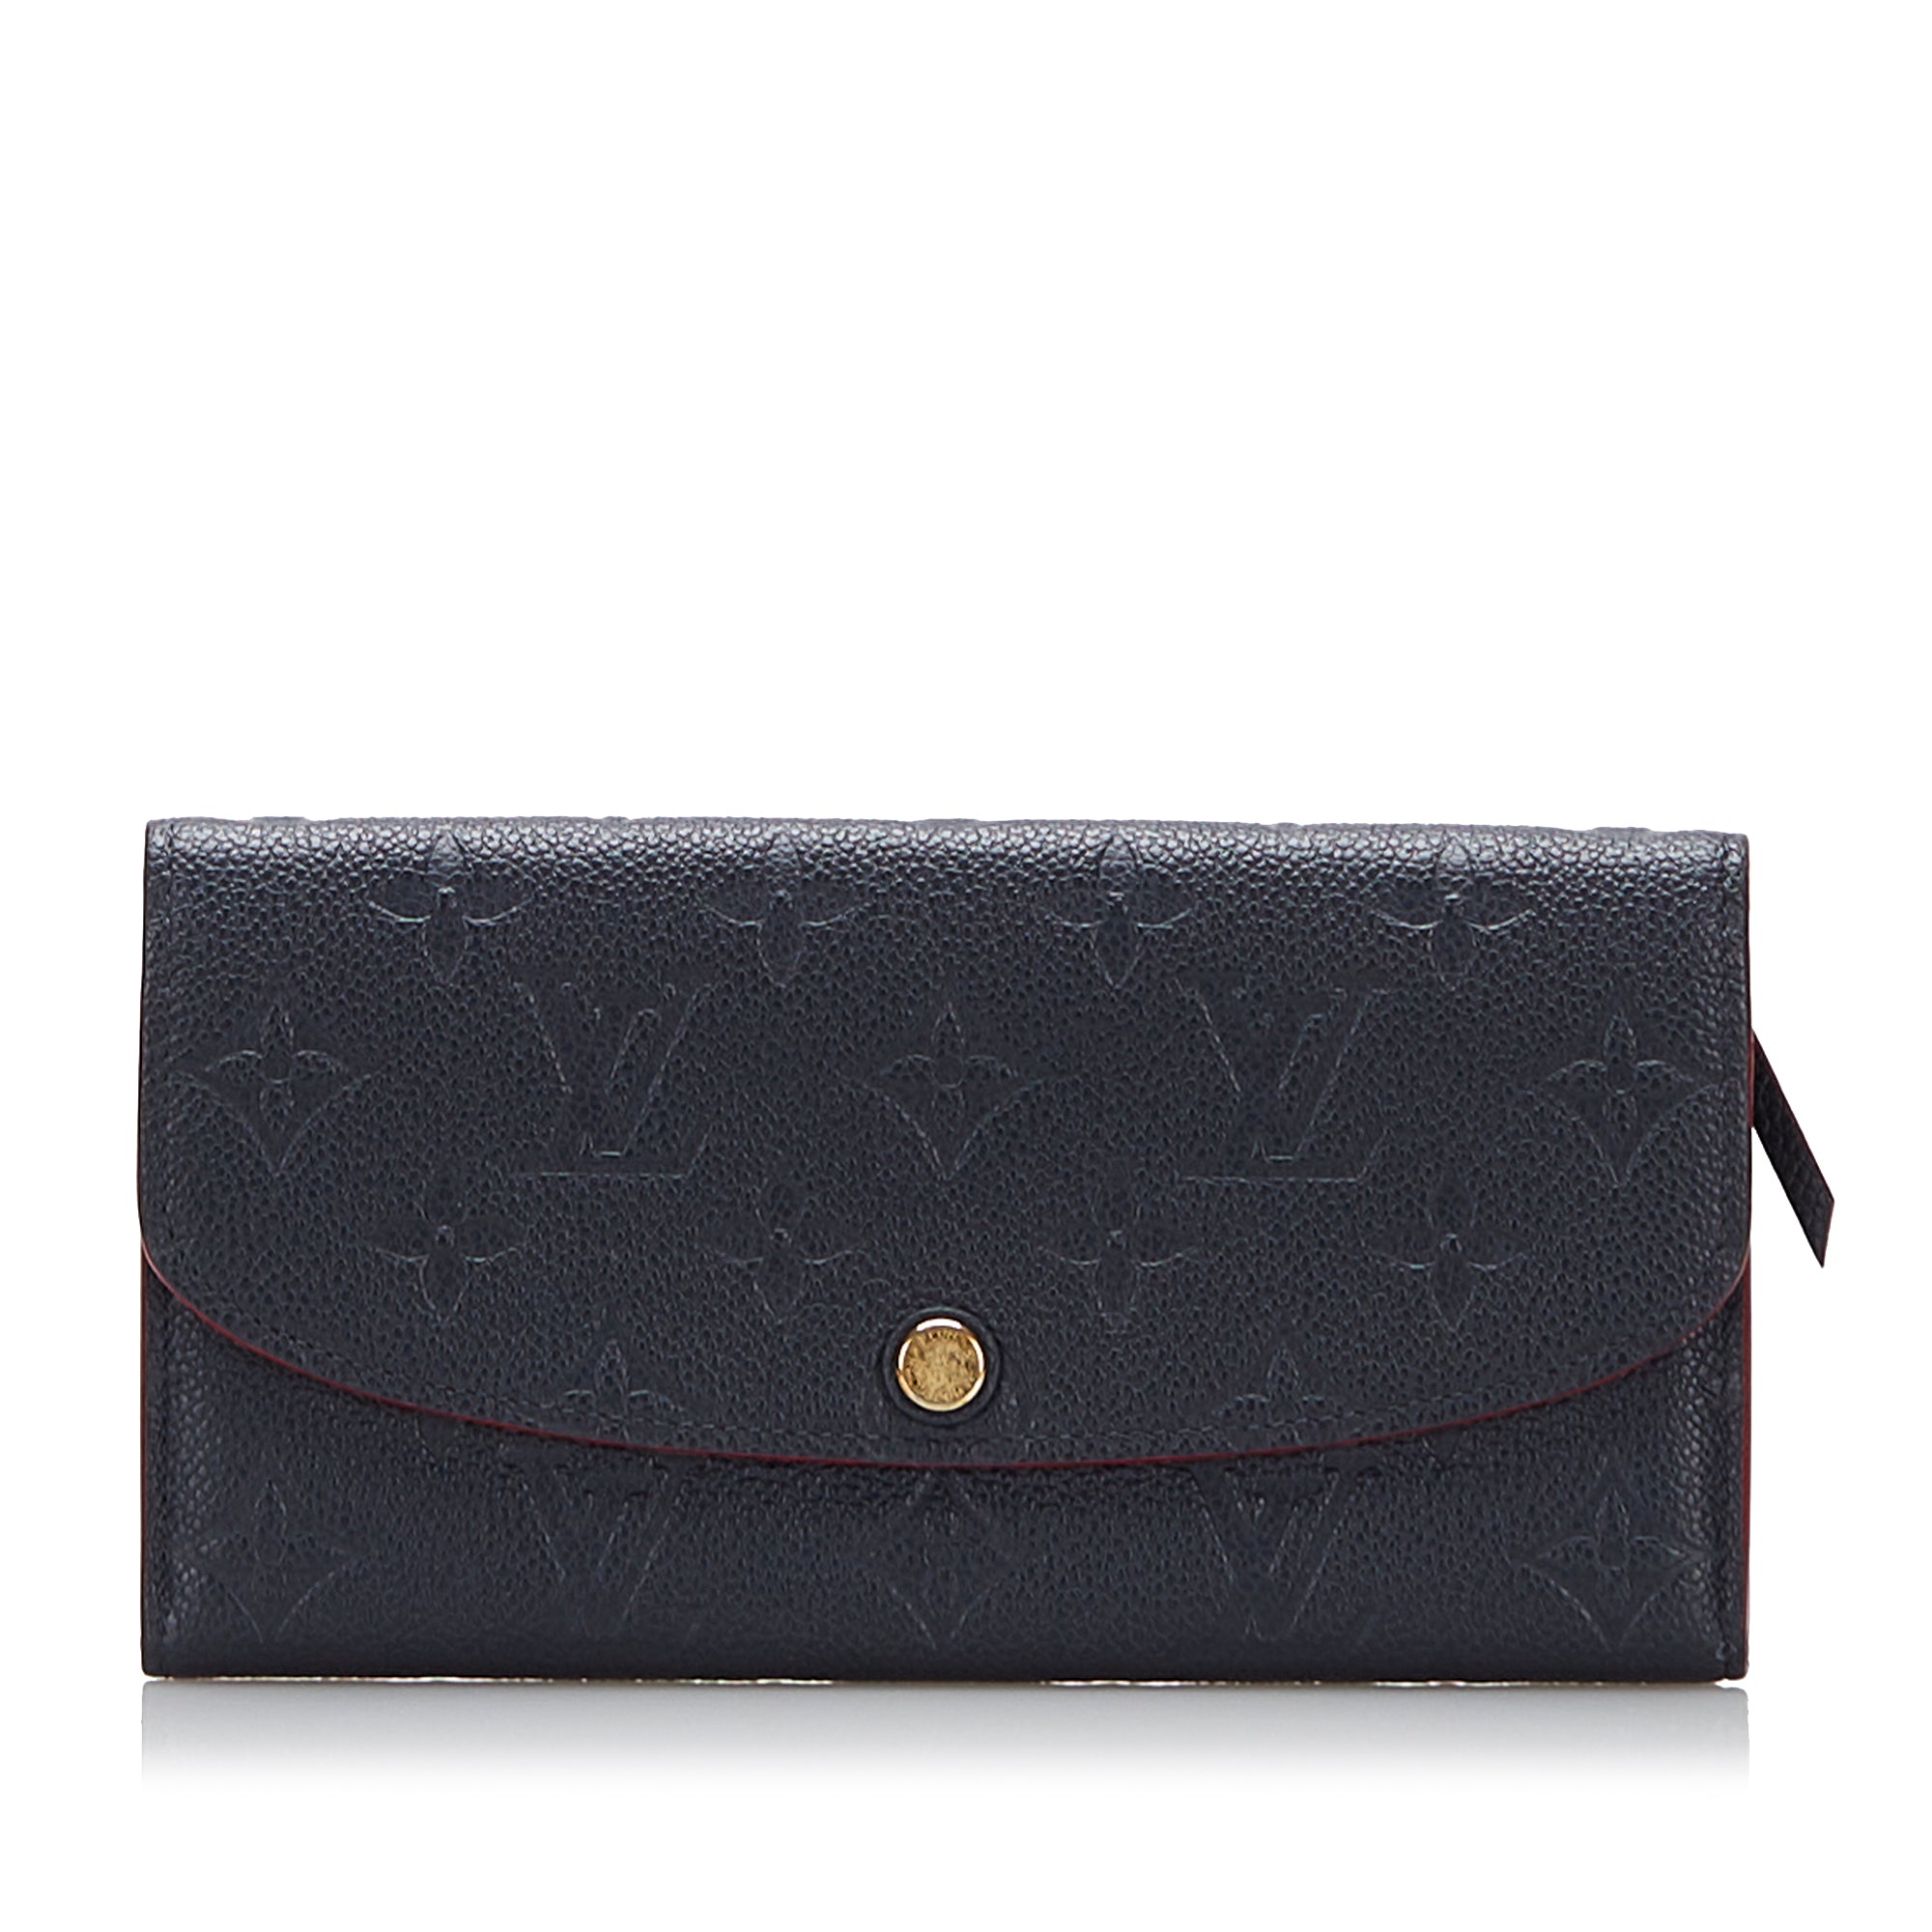 Authentic Louis Vuitton Emilie Wallet Monogram Empriente Leather